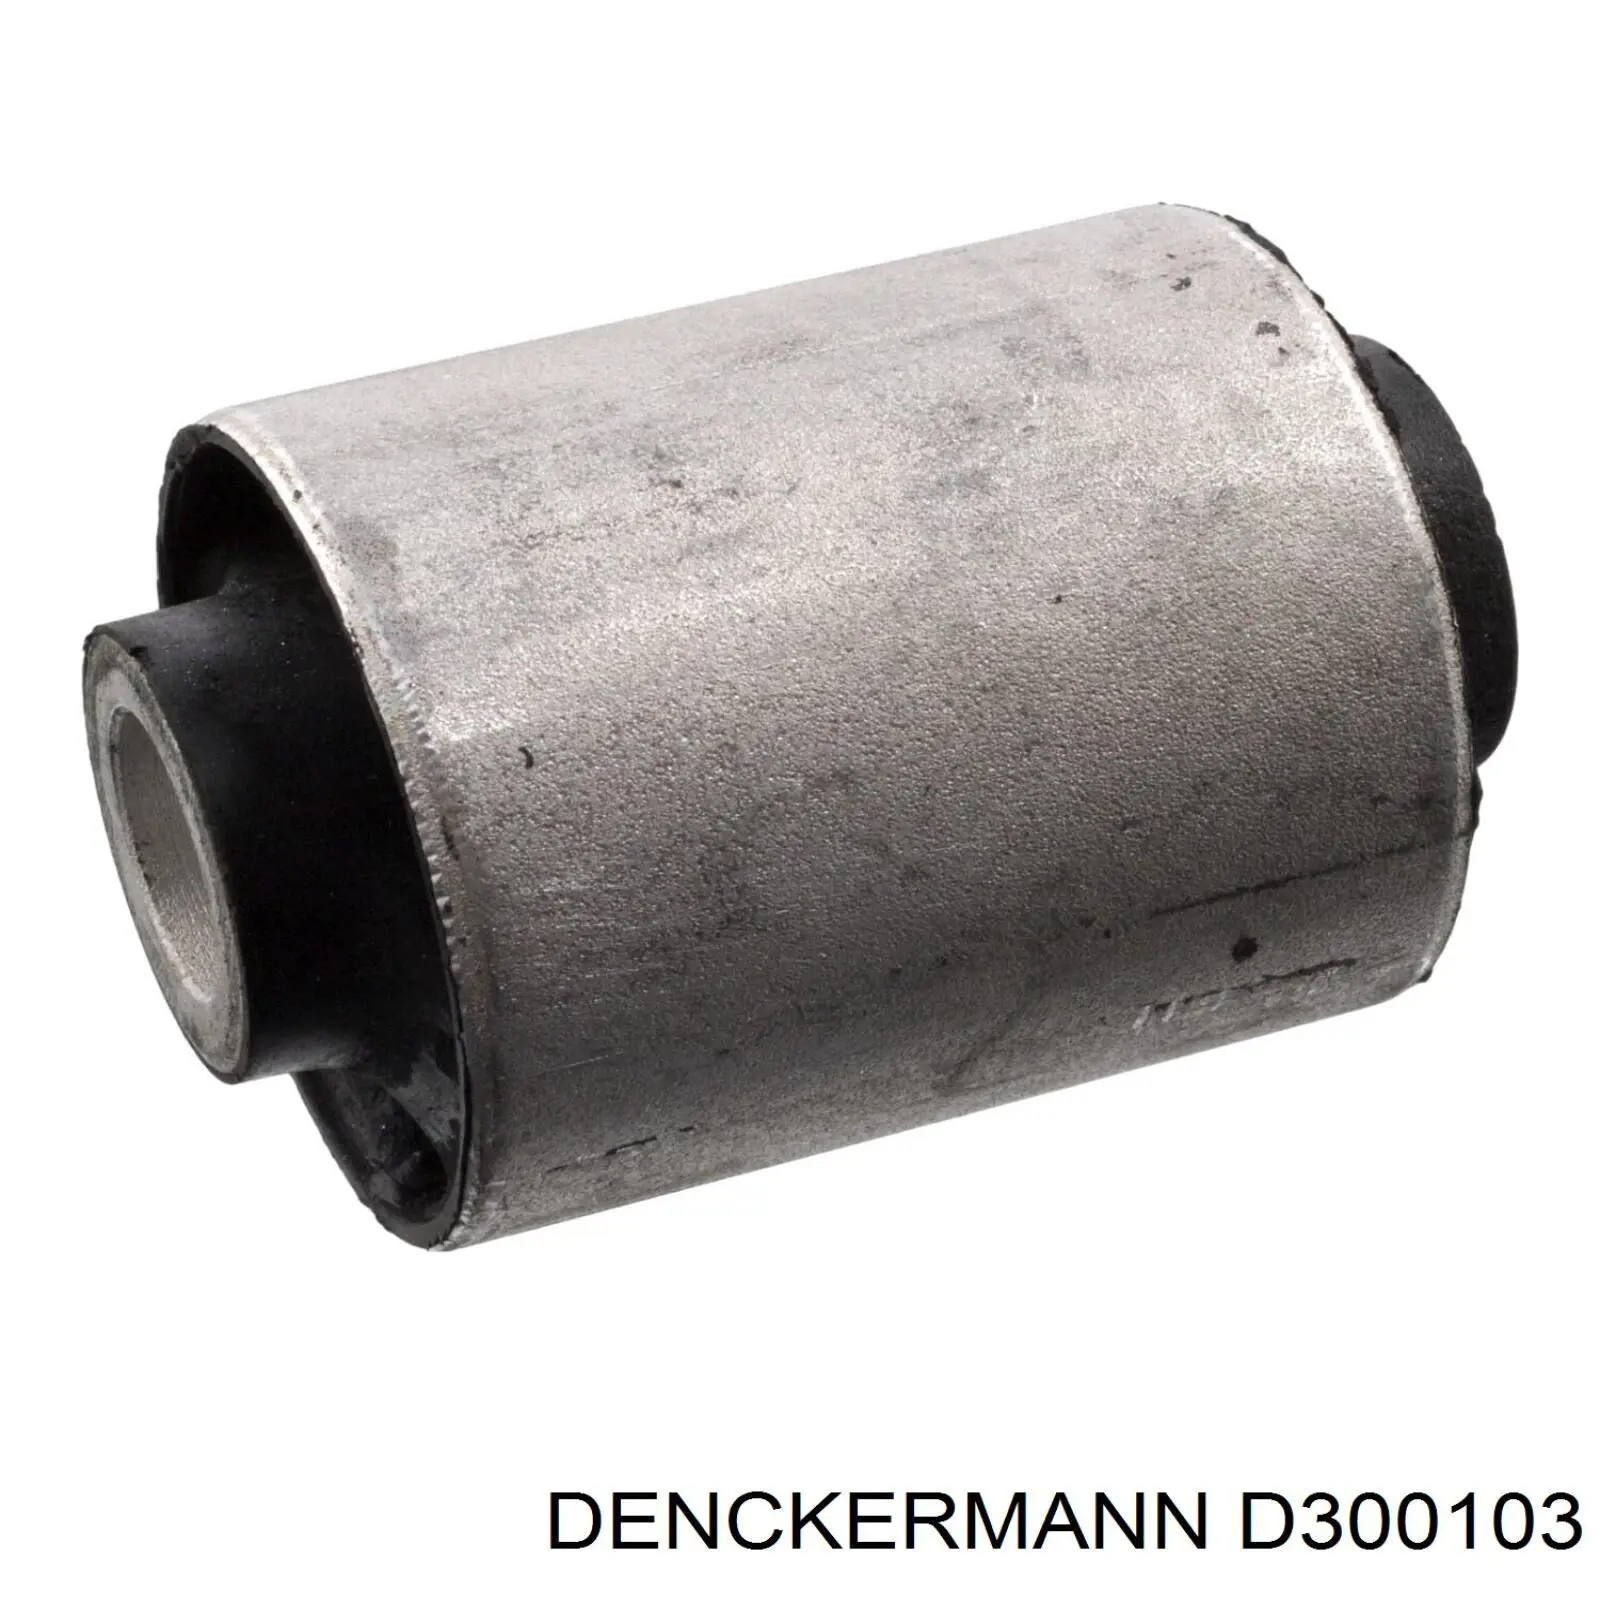 D300103 Denckermann silentblock de suspensión delantero inferior